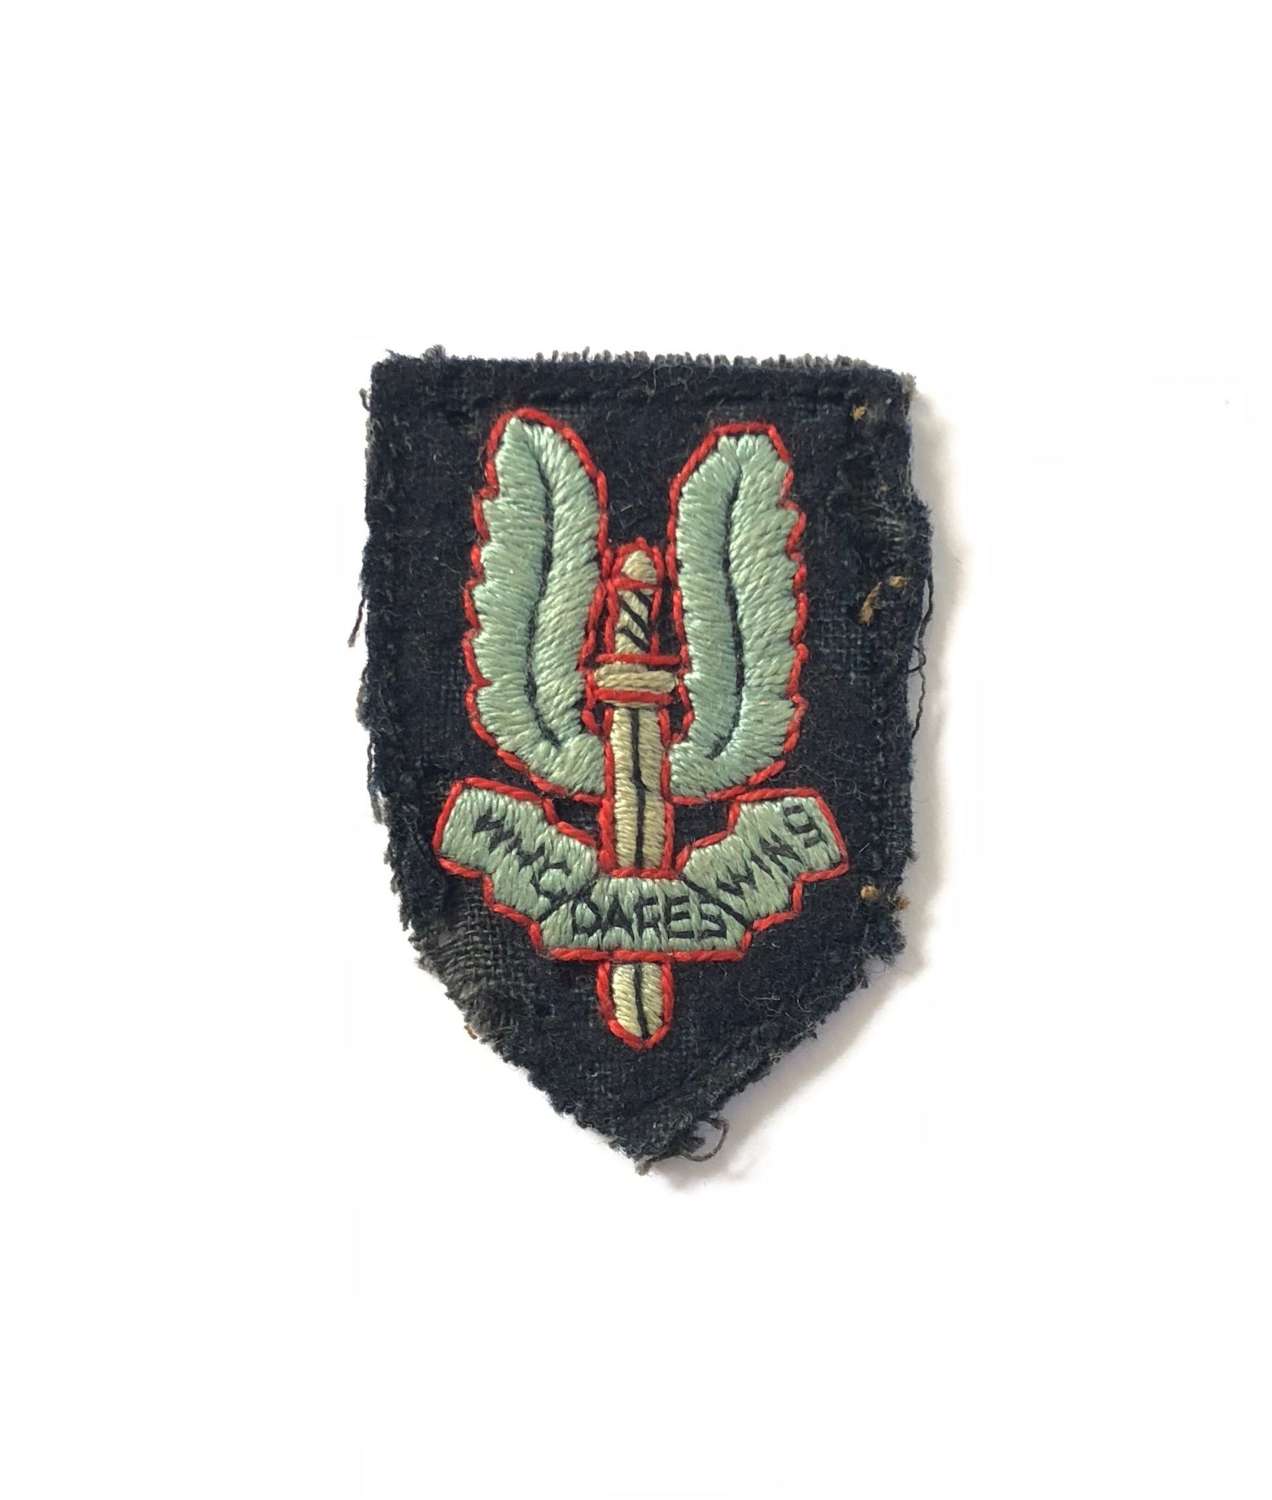 WW2 Period Special Air Service SAS Cloth Beret Badge.